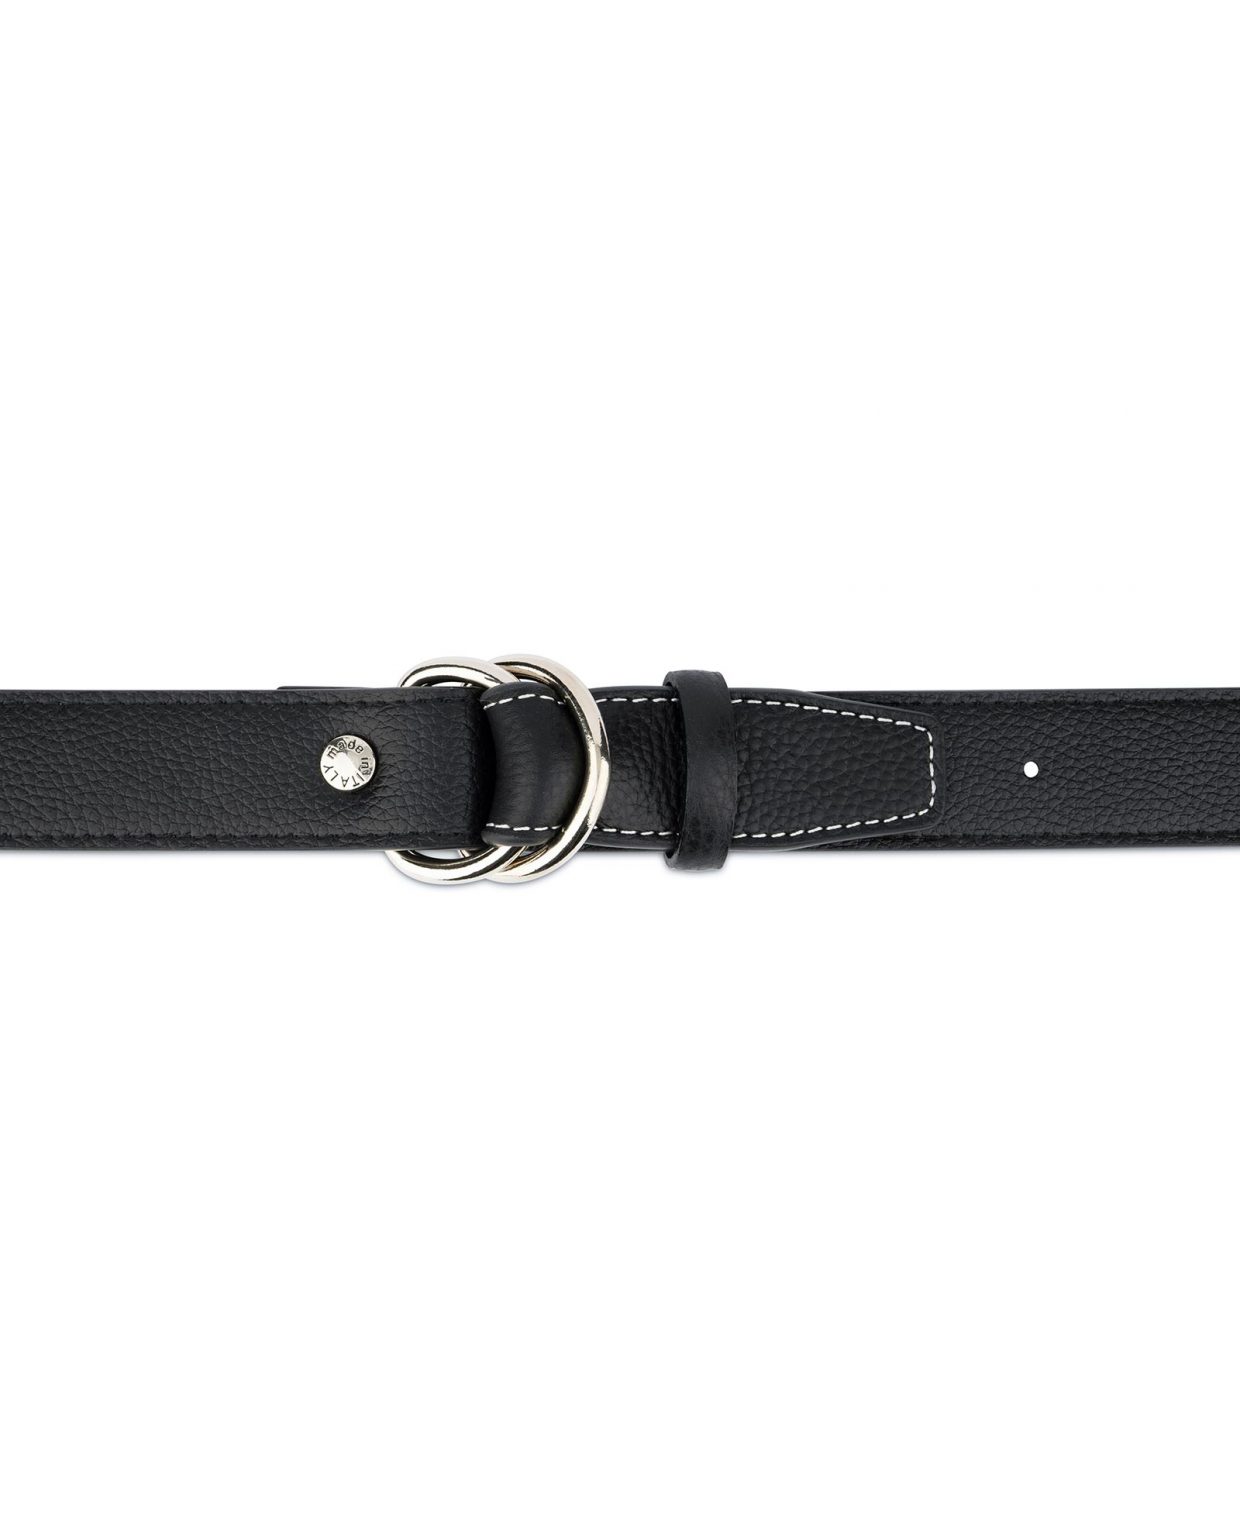 Buy Mens D Ring Belt - Black Leather - LeatherBeltsOnline.com